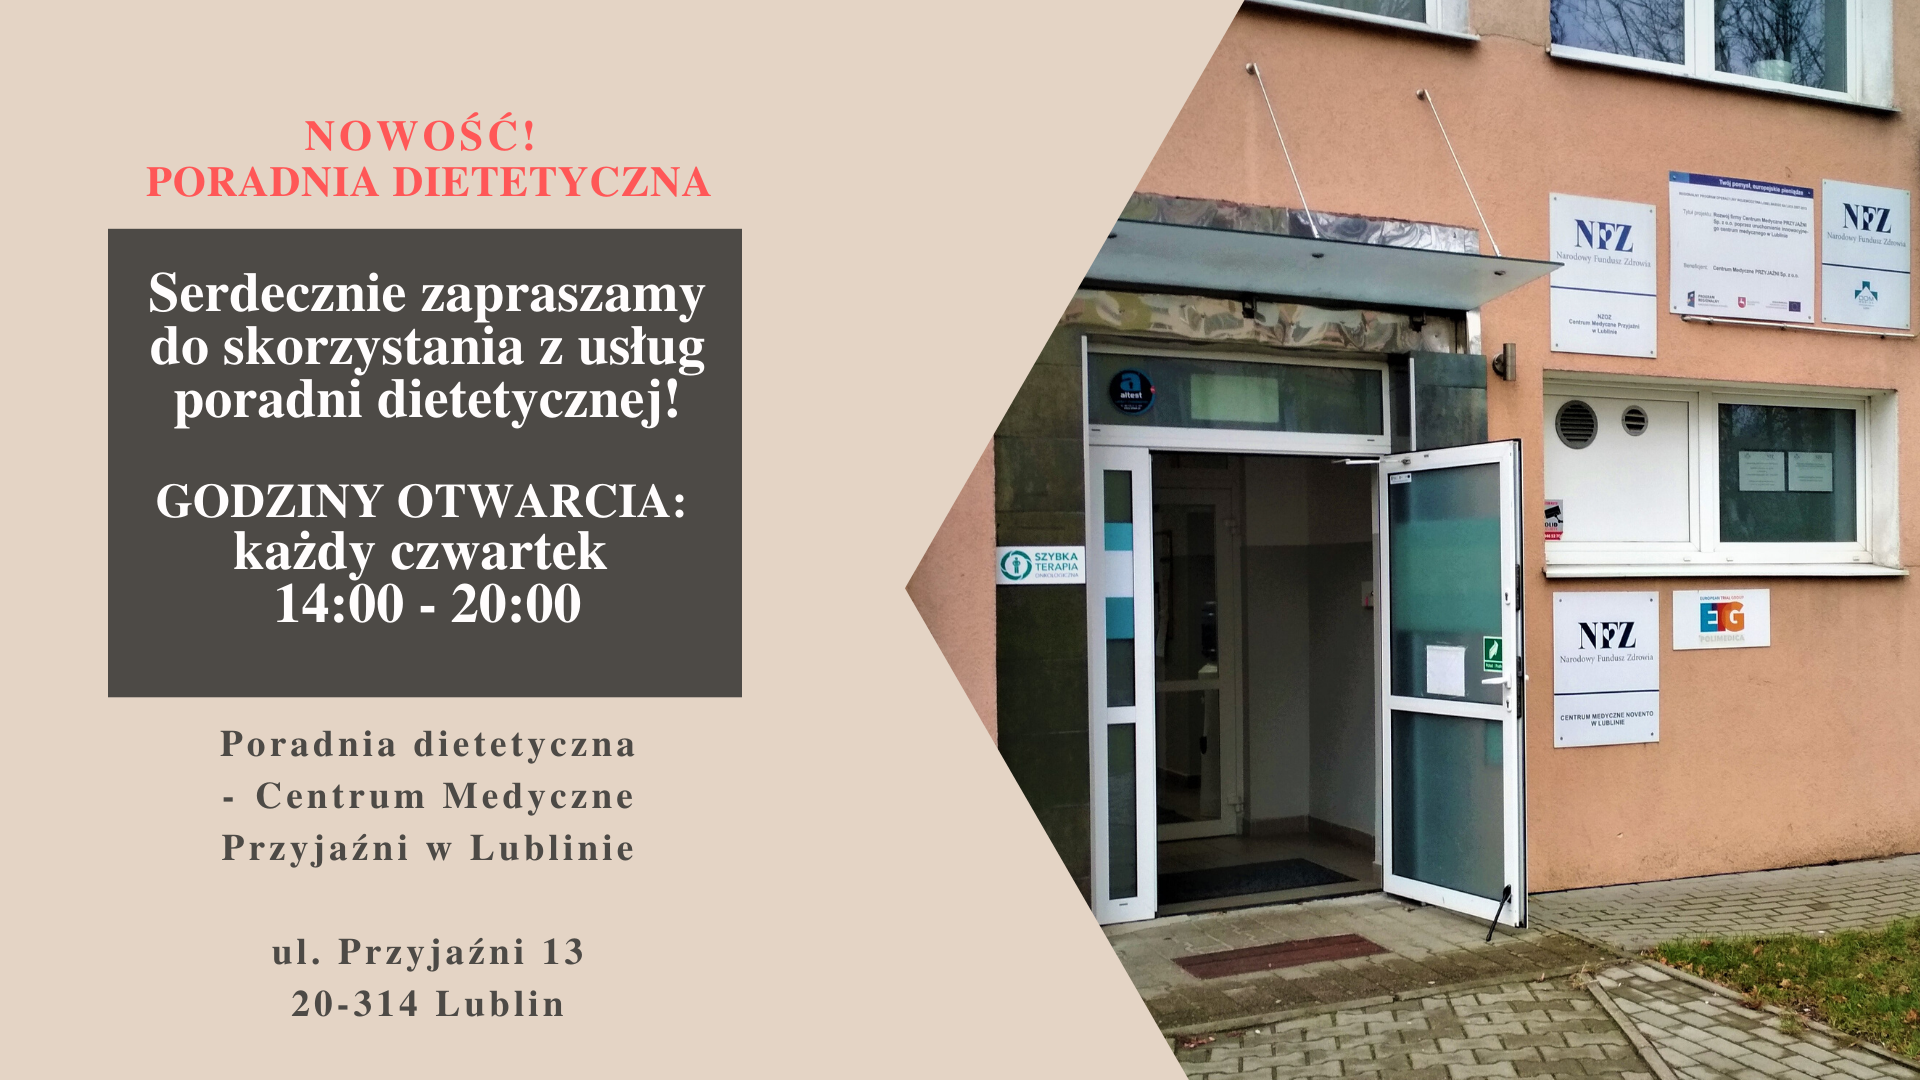 Poradnia dietetyczna Centrum Medyczne Przyjaźni w Lublinie